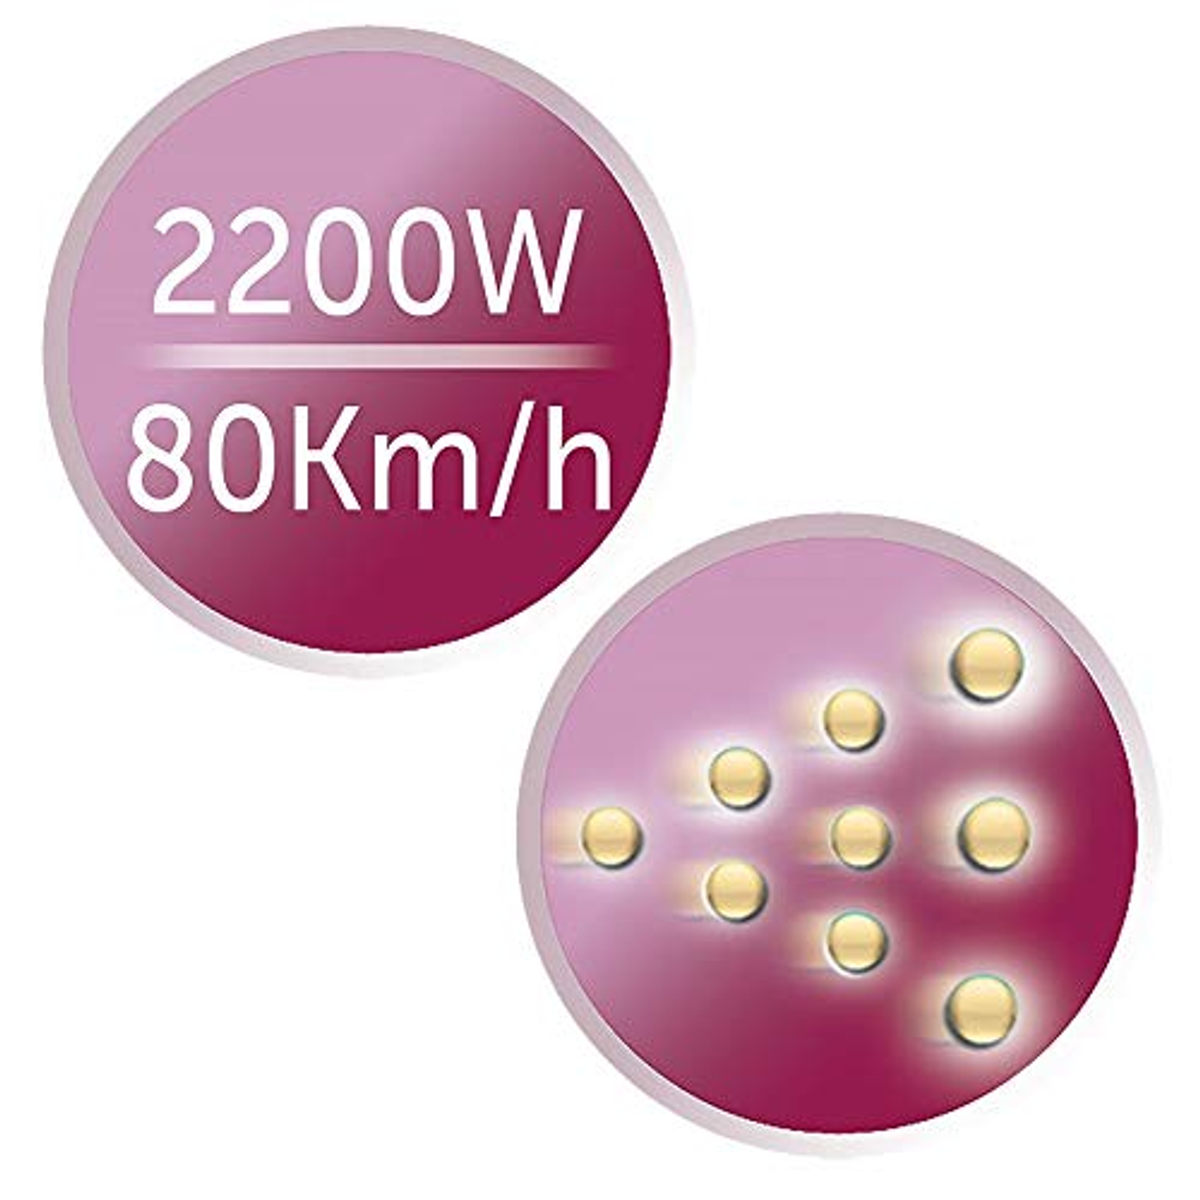 REMINGTON D 5950 PRO AIR Watt) Haartrockner Schwarz/Pink DRY (2200